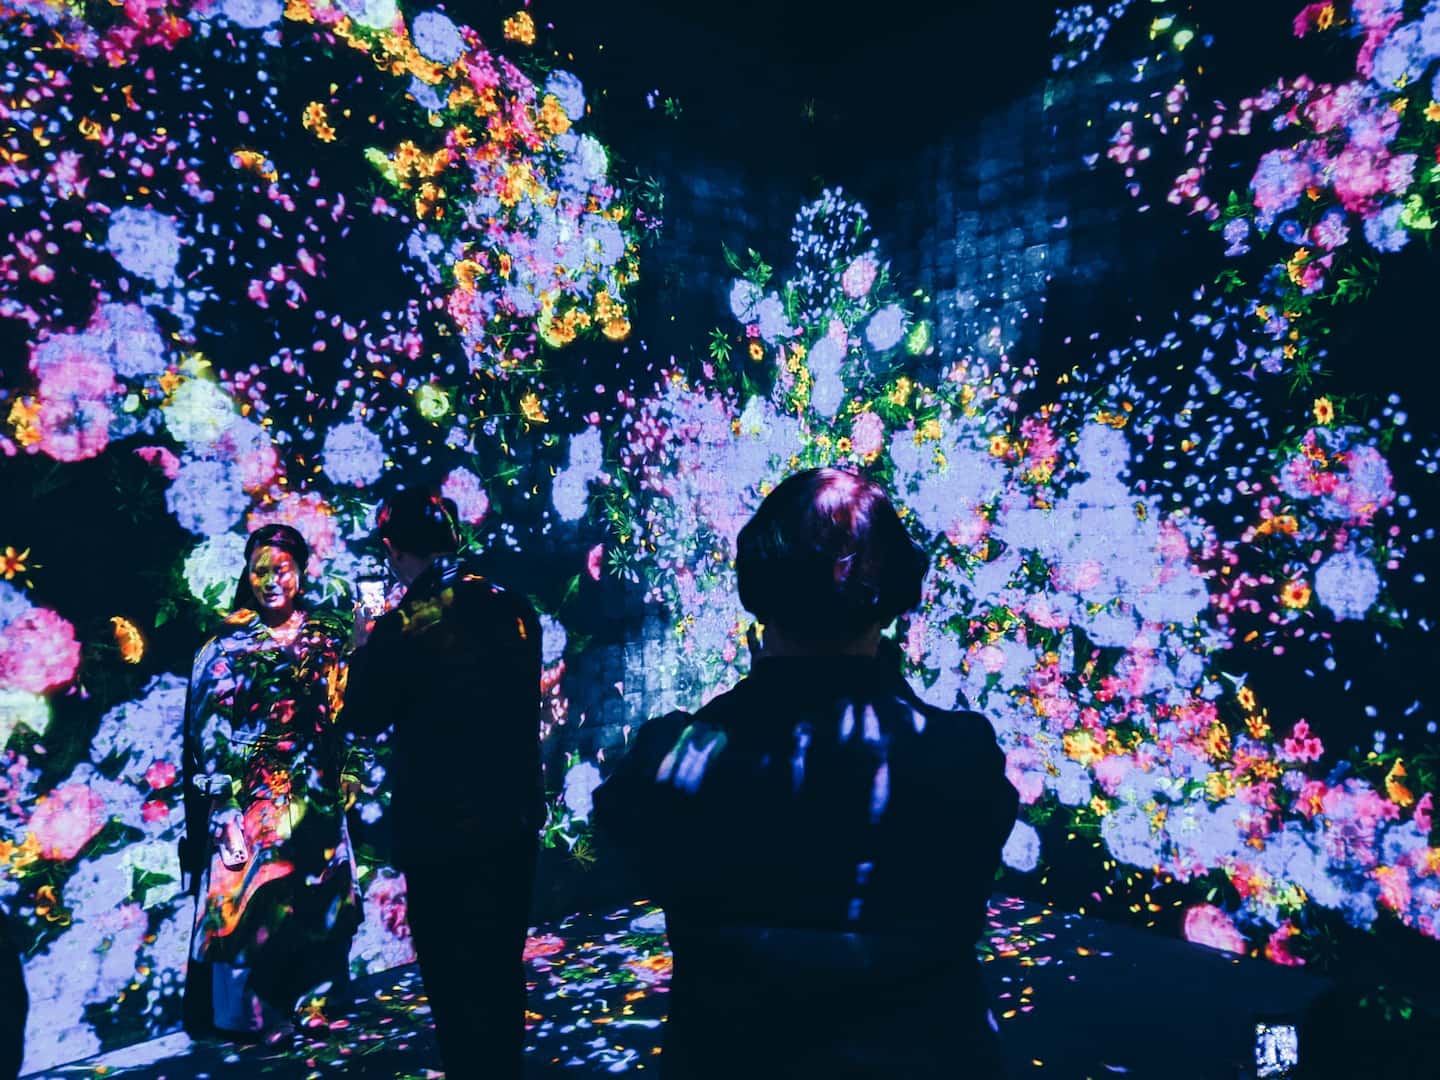 A imagem mostra pessoas em uma exposição de arte digital. O ambiente está escuro. A obra é exibida em telões e é composta por flores de diversos tipos e cores.